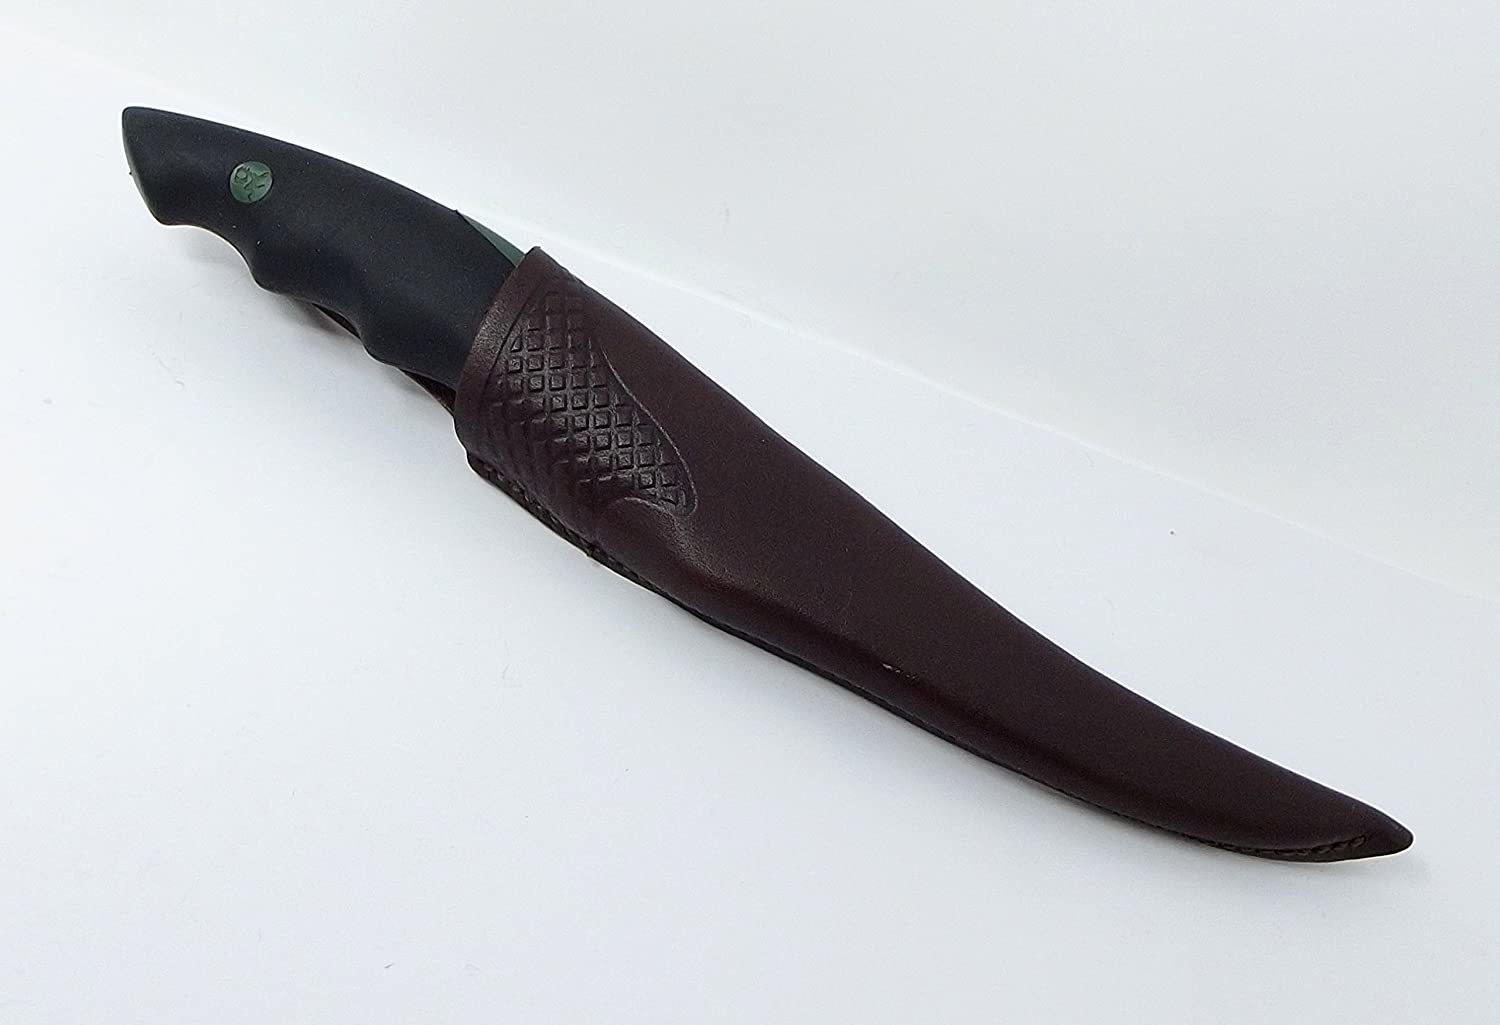 Нож с фиксированным клинком Brusletto Sprettern от Ножиков